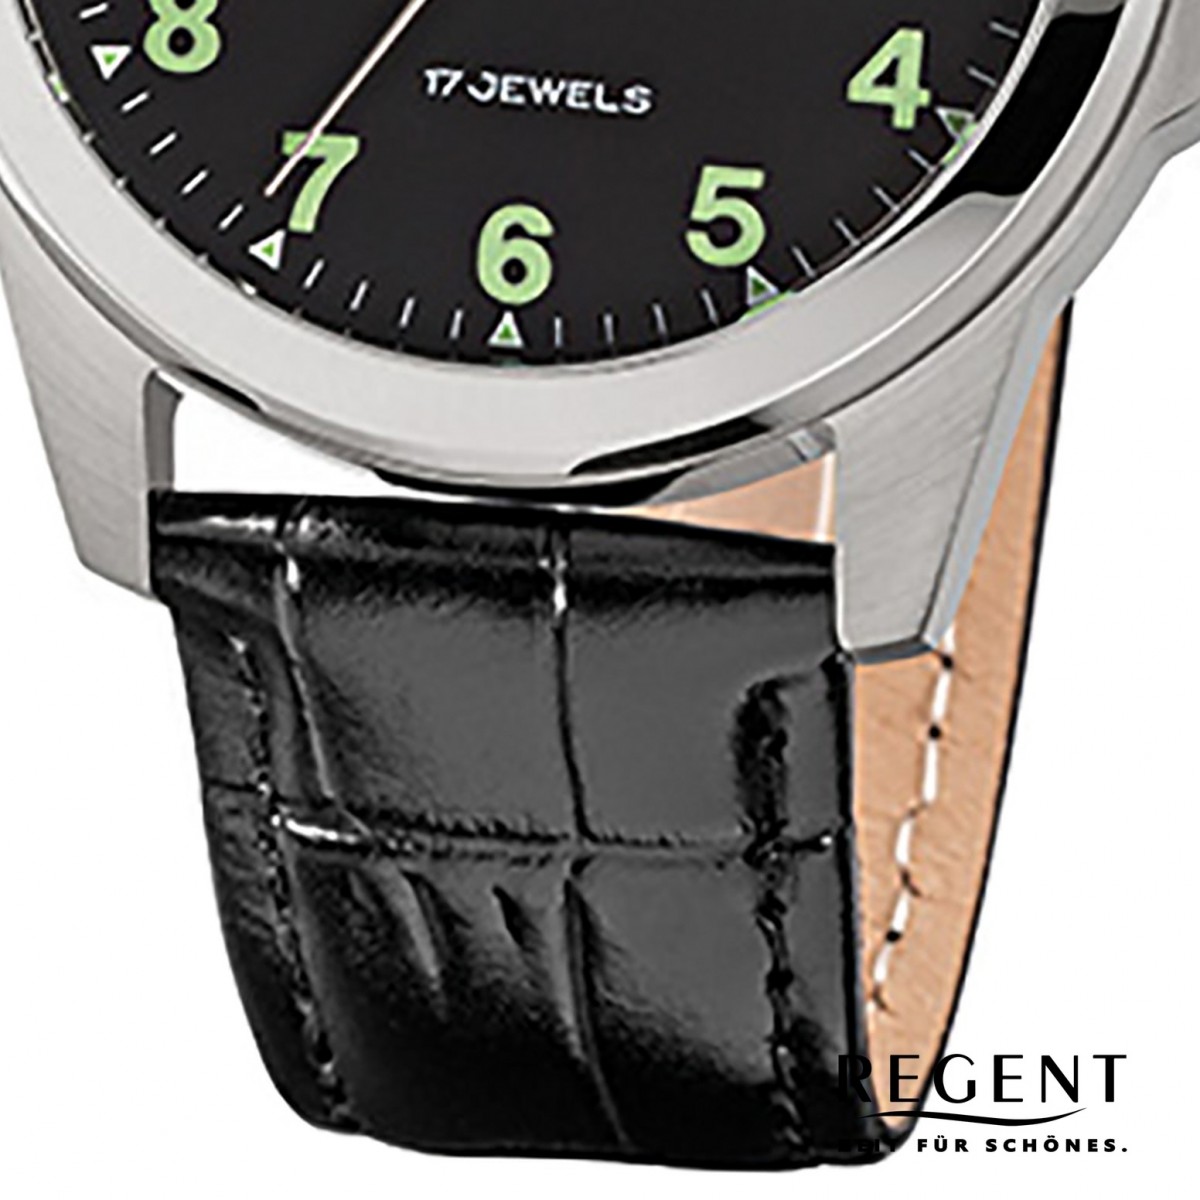 Regent Herren-Armbanduhr F-1392 Handaufzug Leder-Armband URF818 schwarz